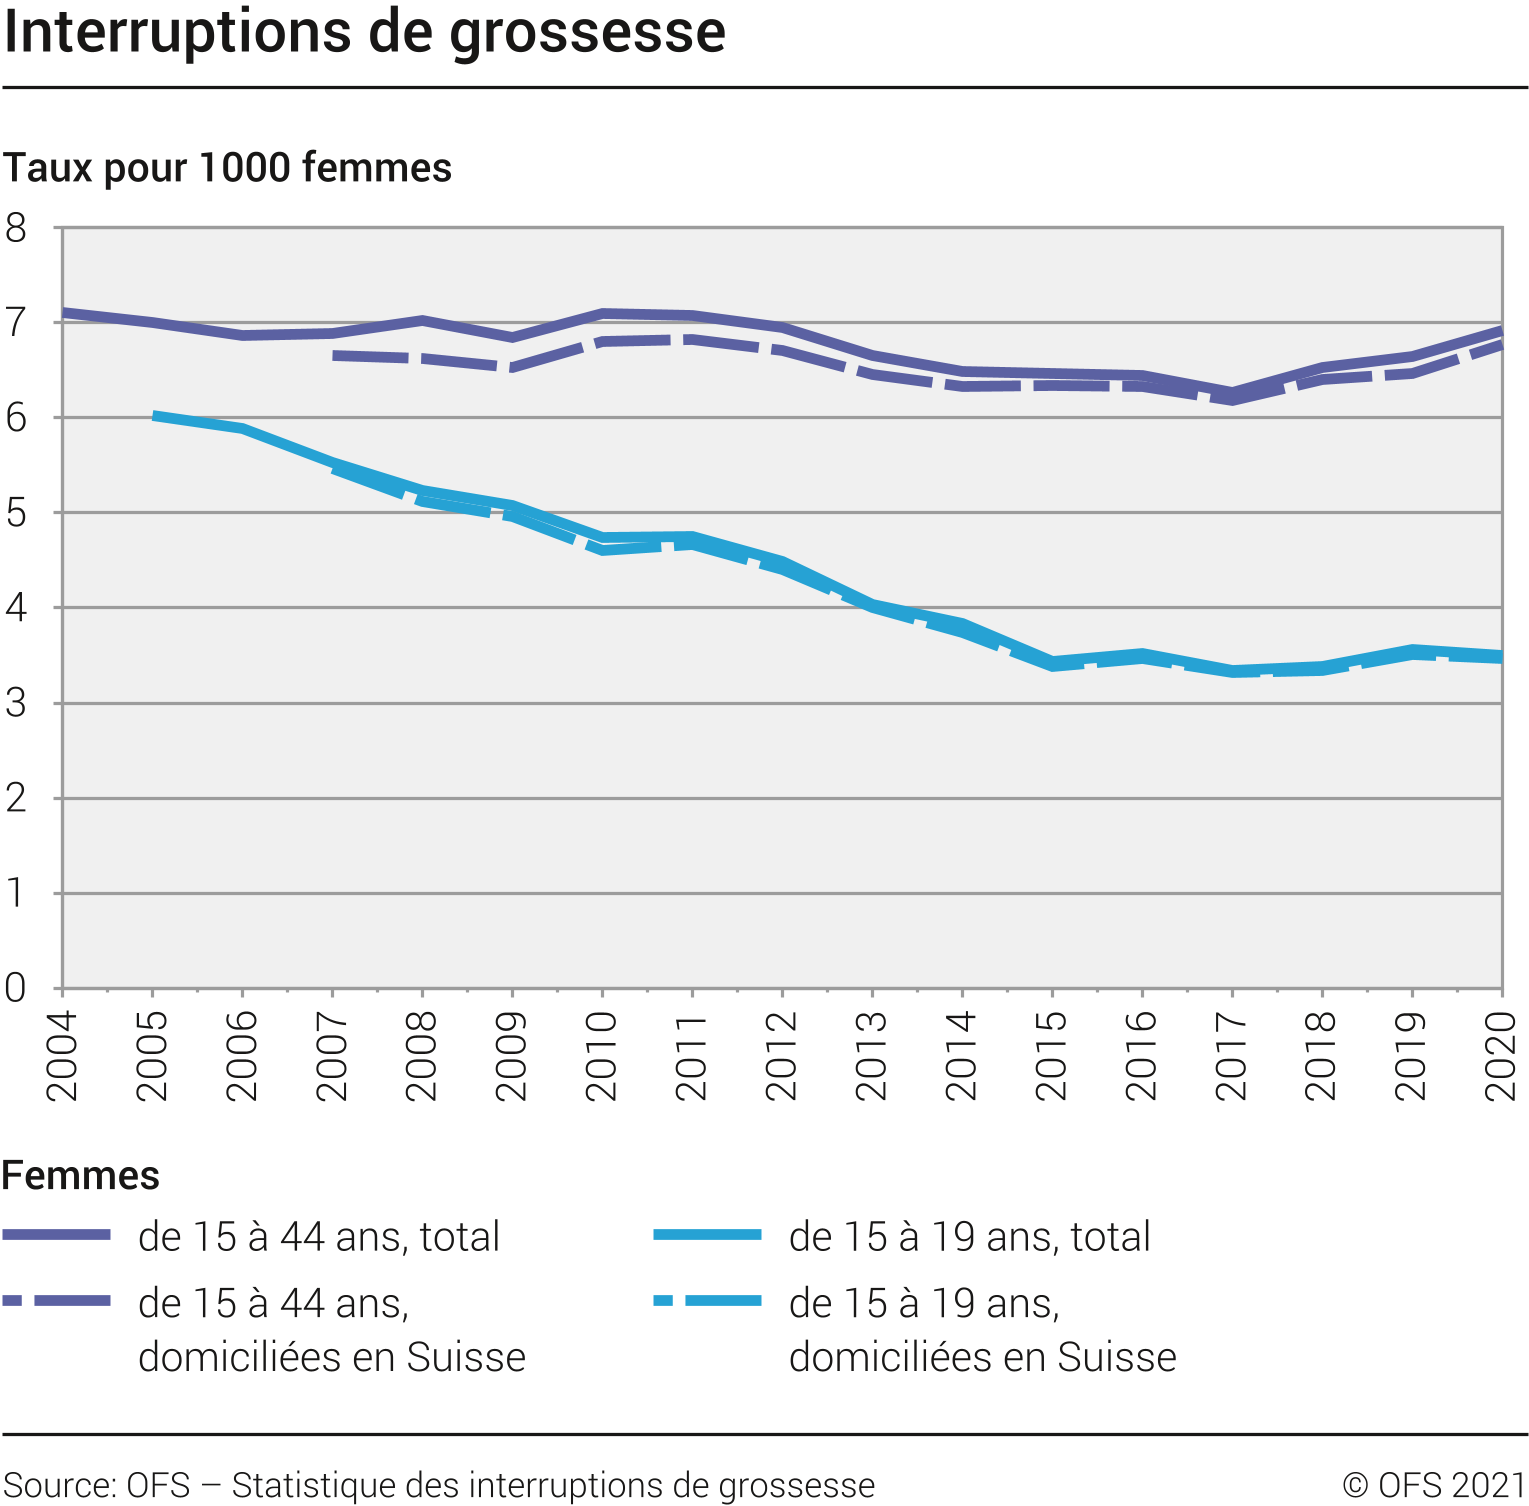 Taux d'IVG pour 1000 femmes en Suisse, selon l'année [OFS - Statistique des interruptions de grossesse]